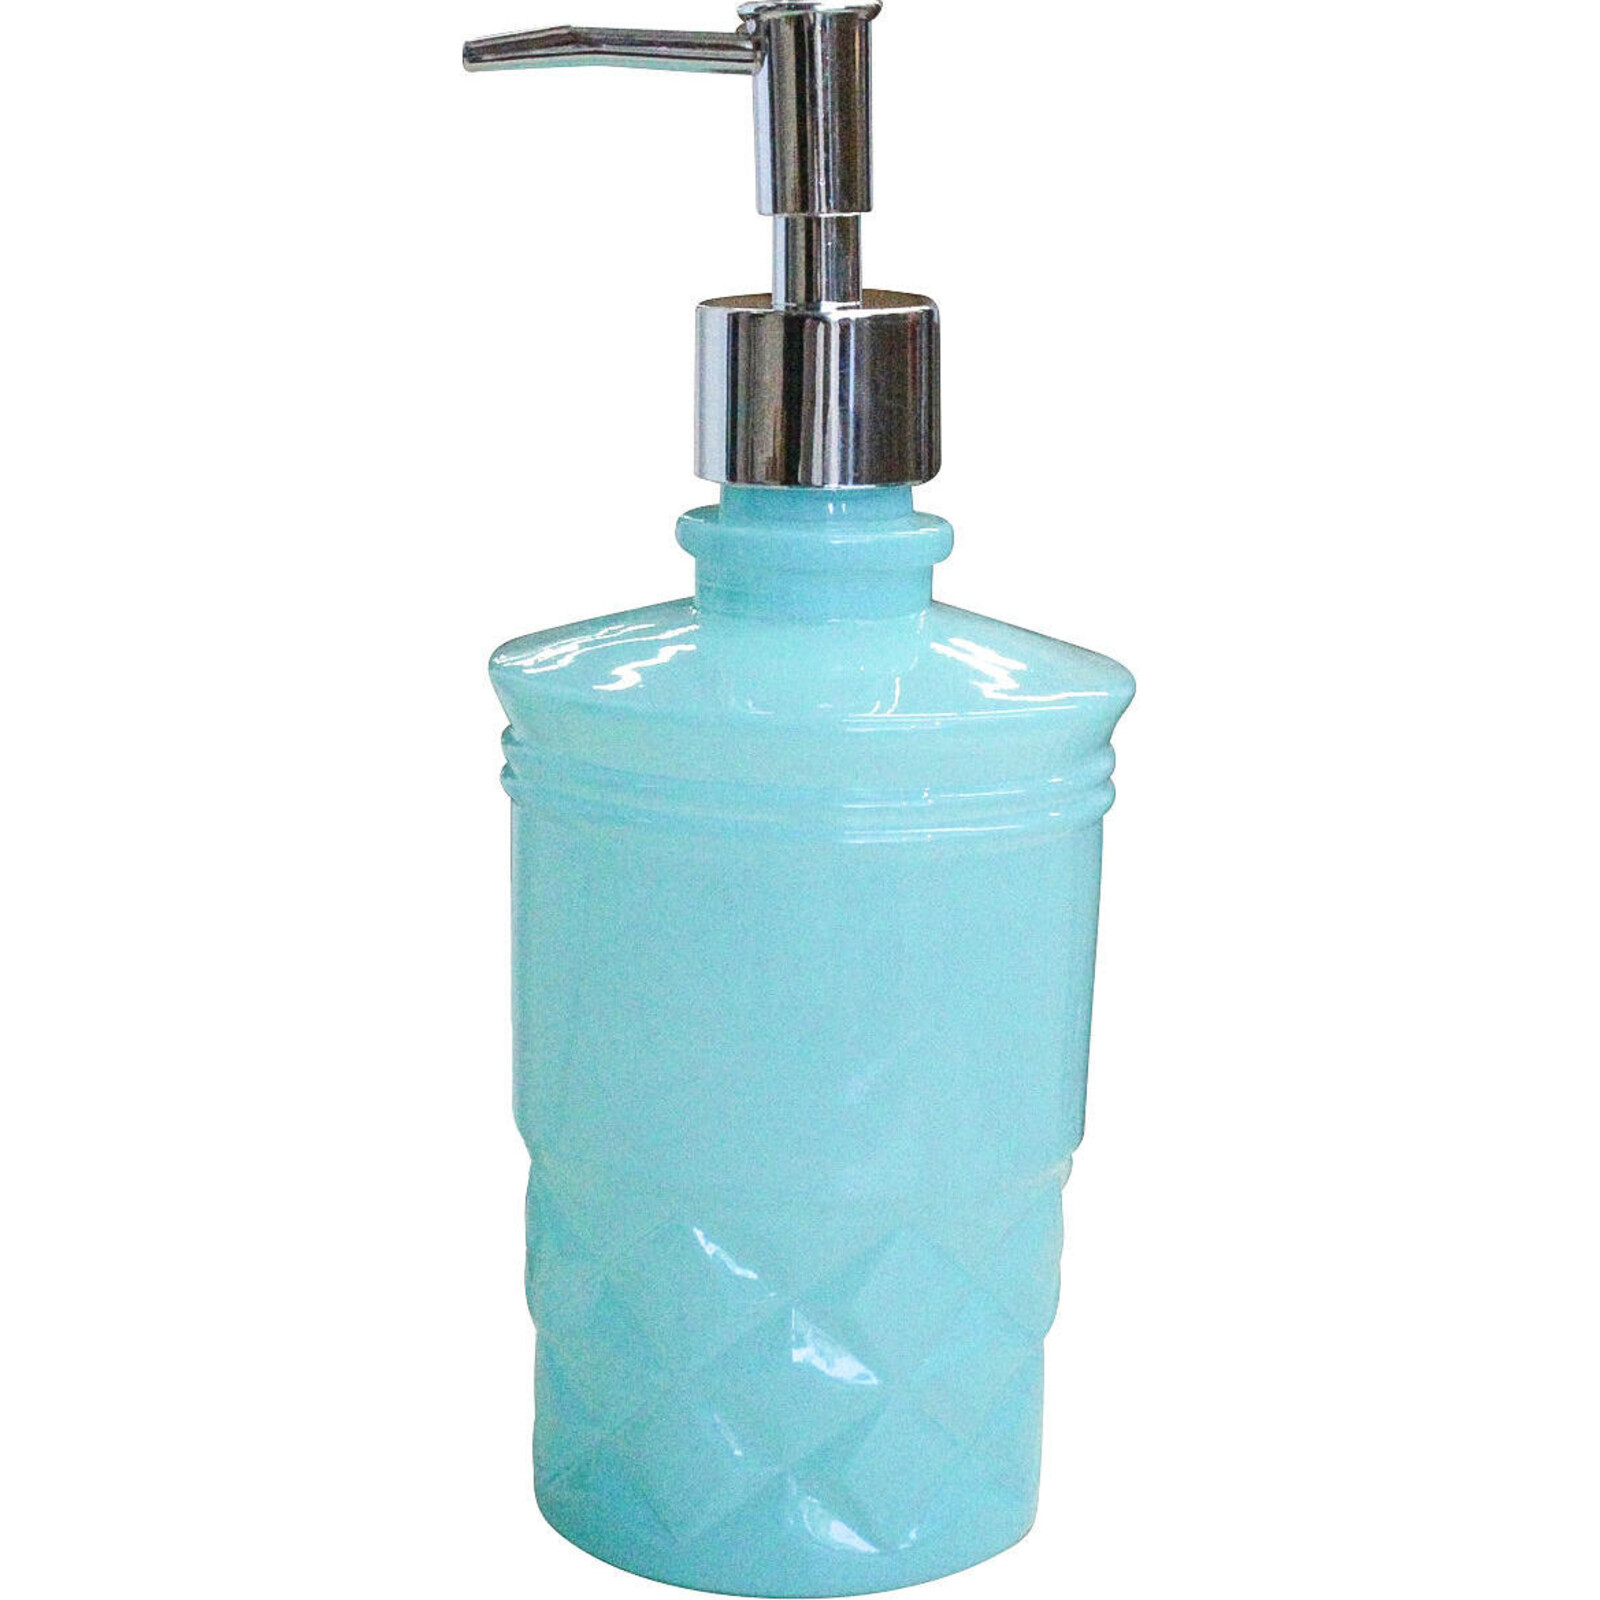 Soap Dispenser Classique Teal